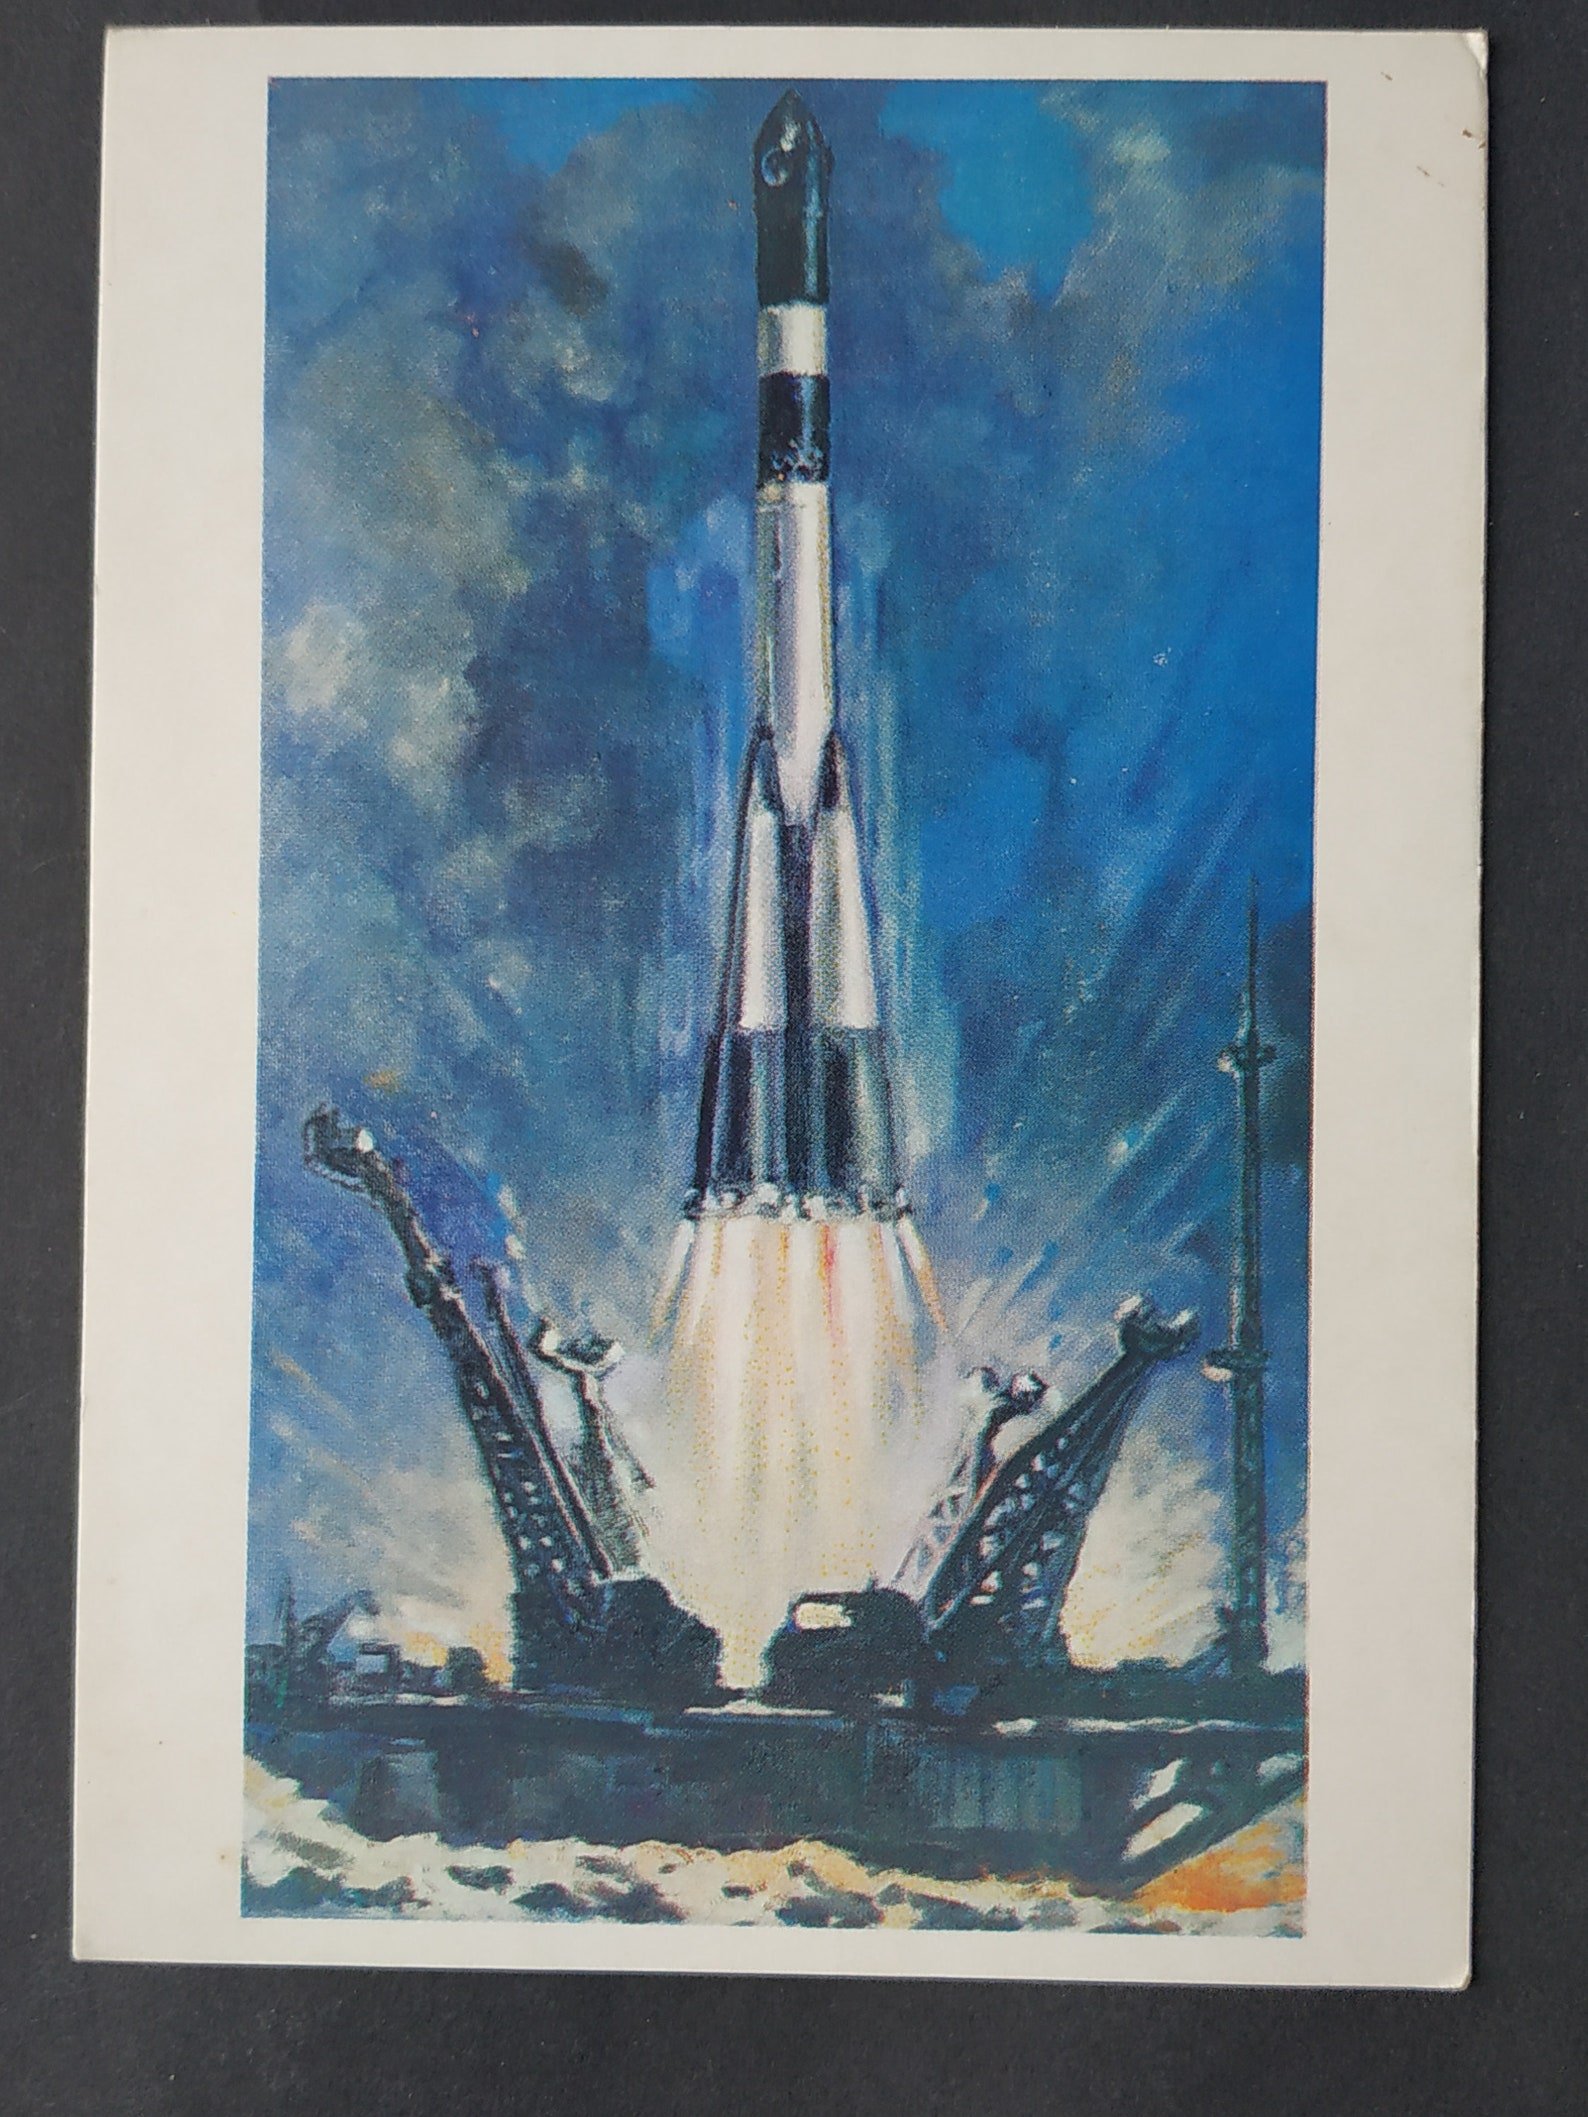 Первая советская ракета в космосе